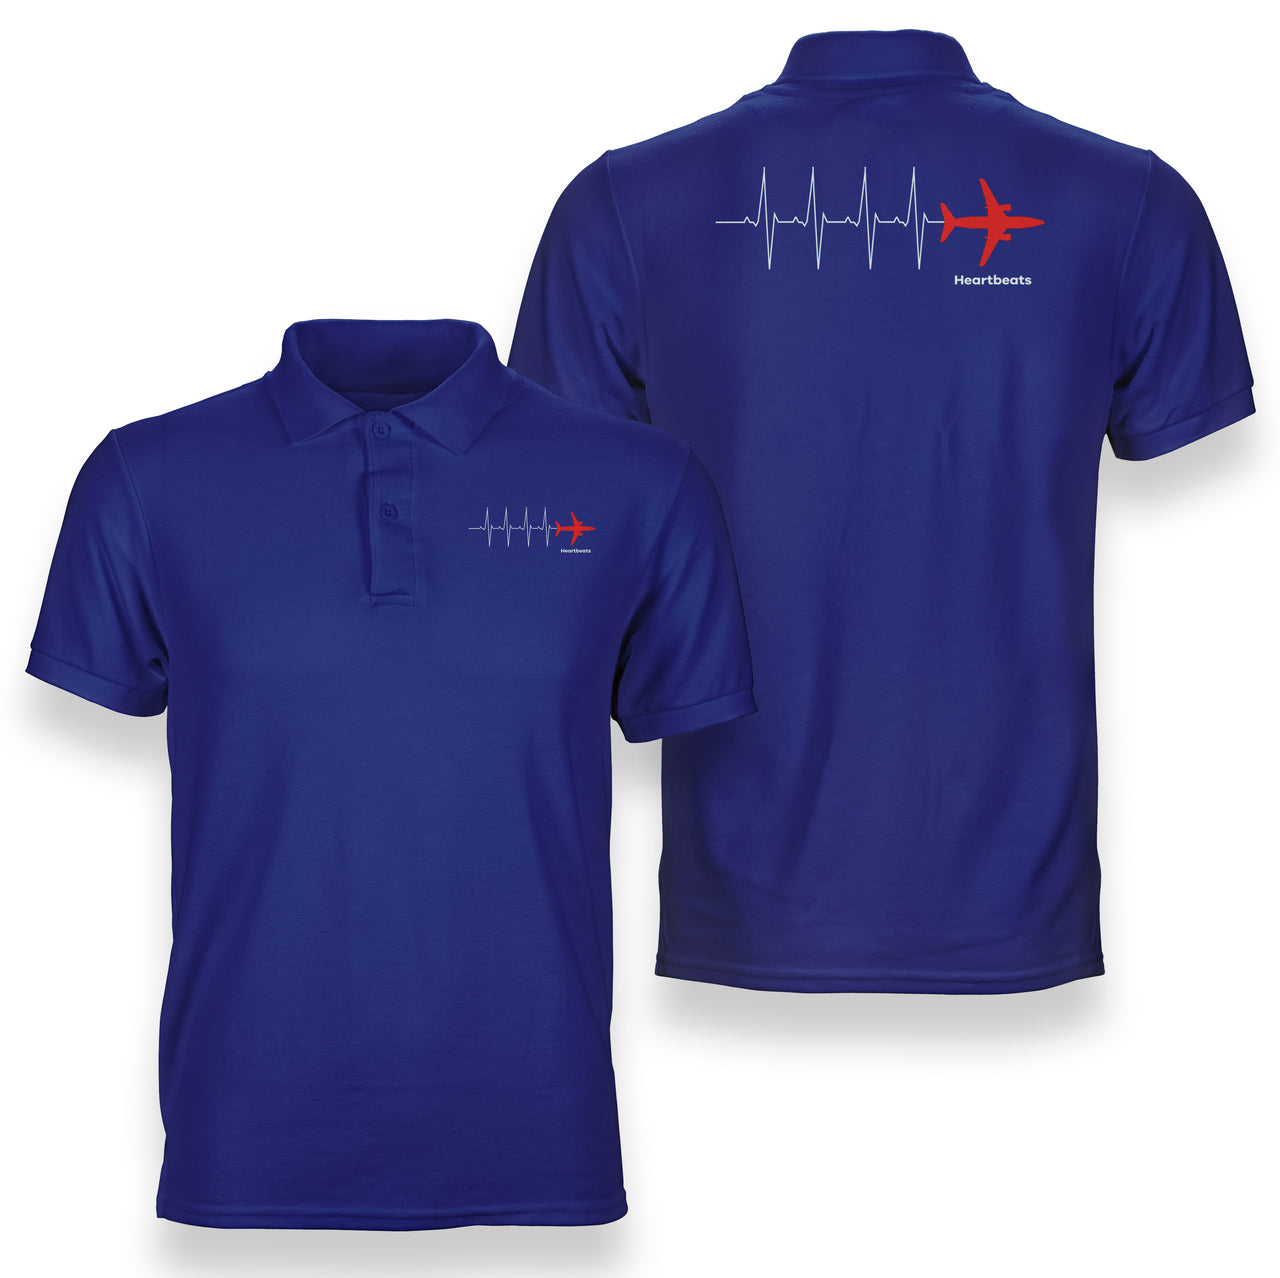 Aviation Heartbeats Designed Double Side Polo T-Shirts